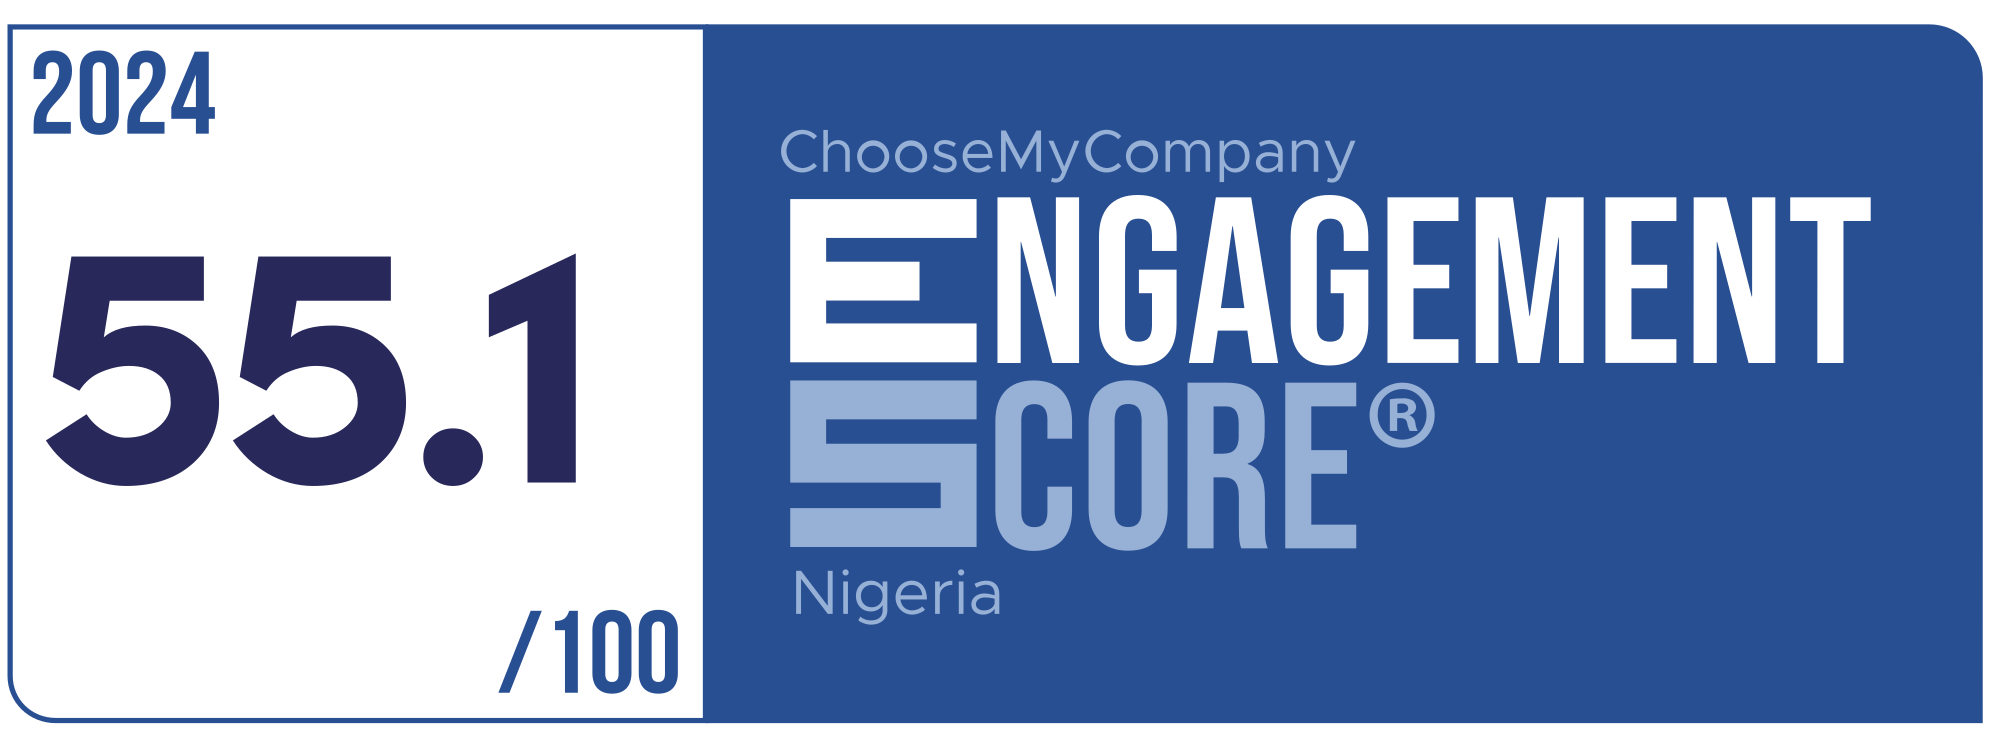 Label Engagement Score 2024 Nigeria